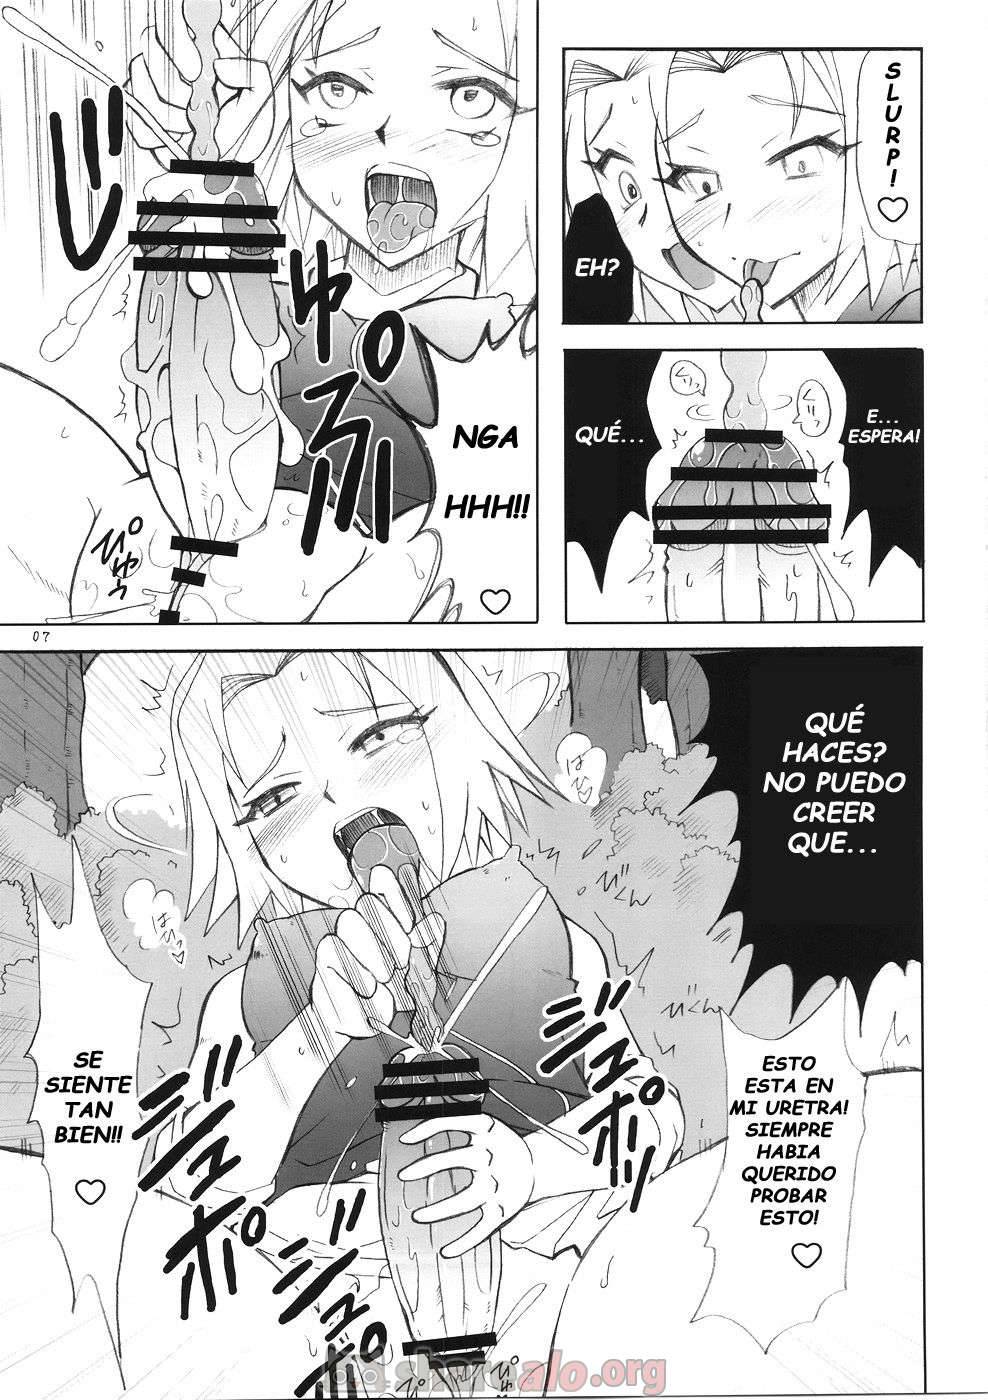 Futanari Kokoro Tenshin (Sakura se Folla a Ino Yamanaka) - 7 - Comics Porno - Hentai Manga - Cartoon XXX